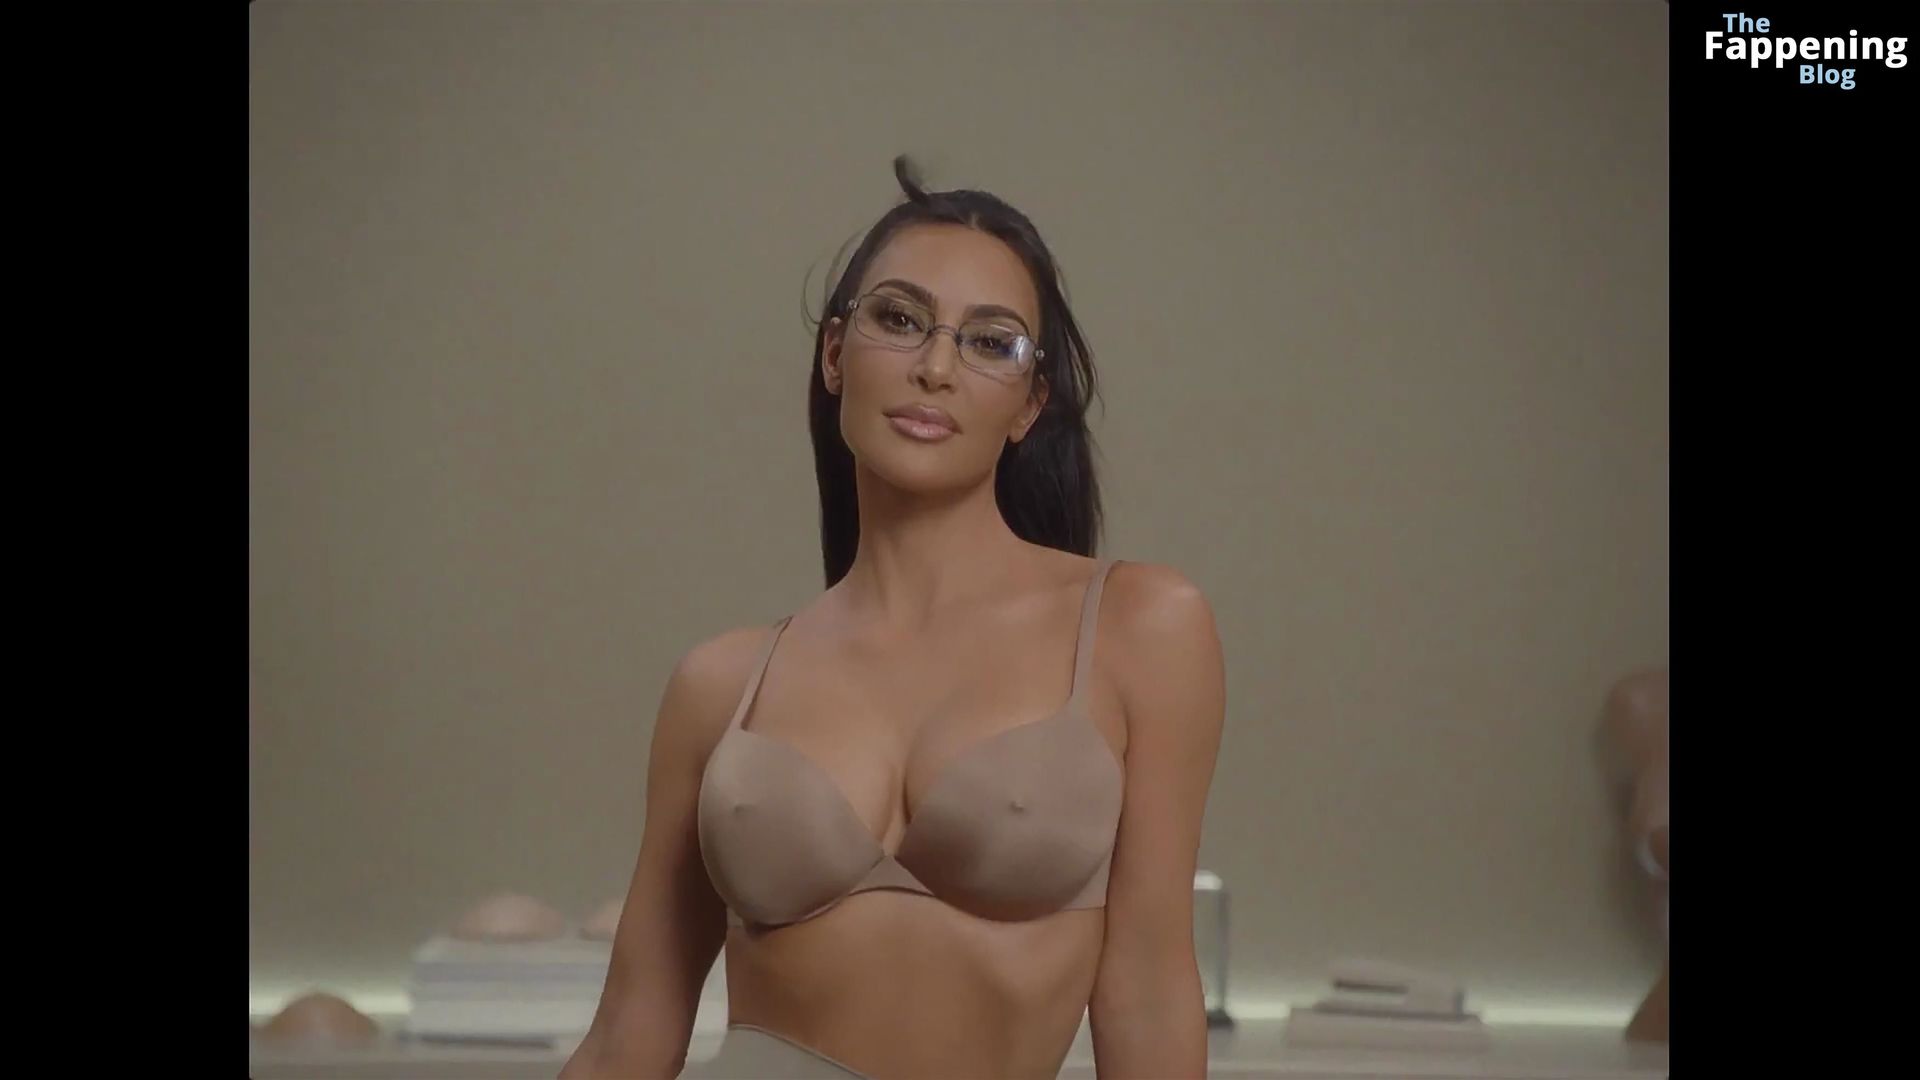 Kim-Kardashian-Sexy-4-The-Fappening-Blog.jpg